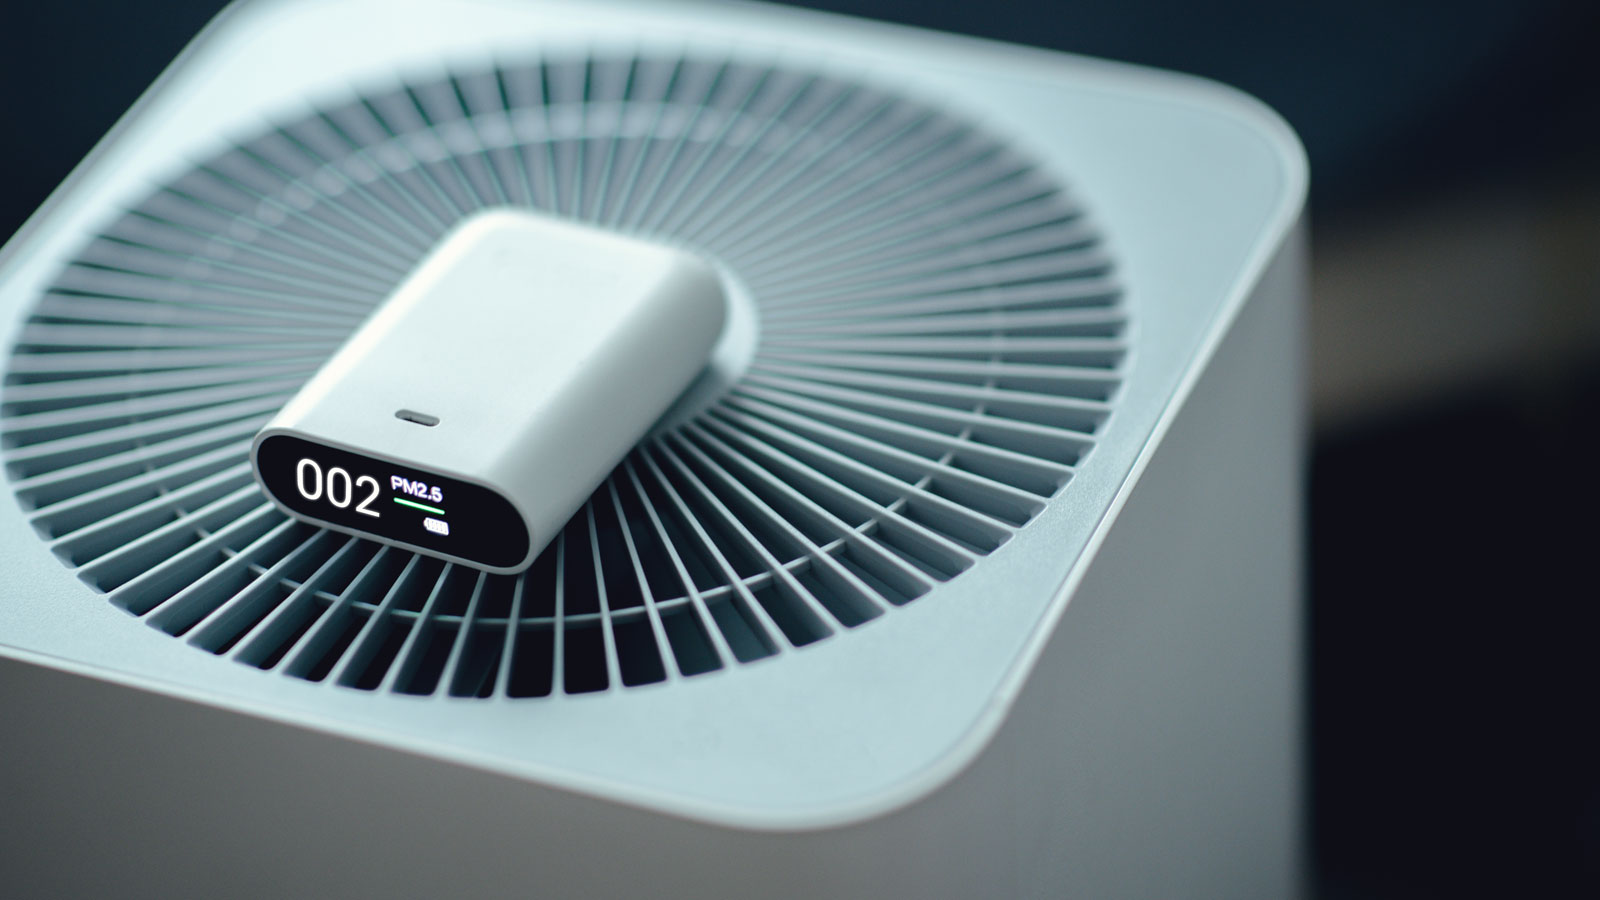 Indoor Smartsense Temperature Humidity Sensor